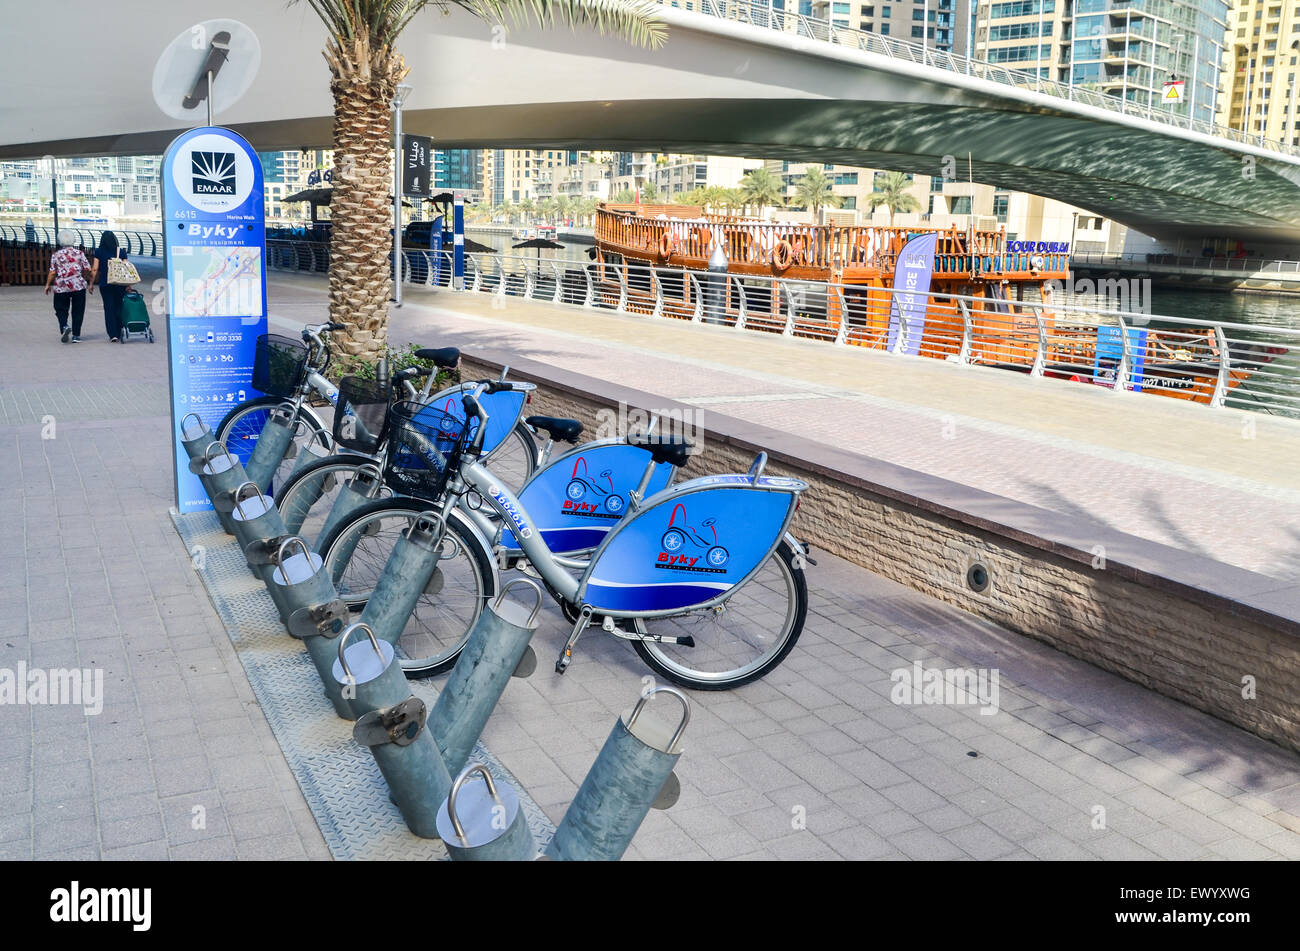 Vélos à louer Byky à la Marina de Dubaï, Émirats arabes unis Banque D'Images